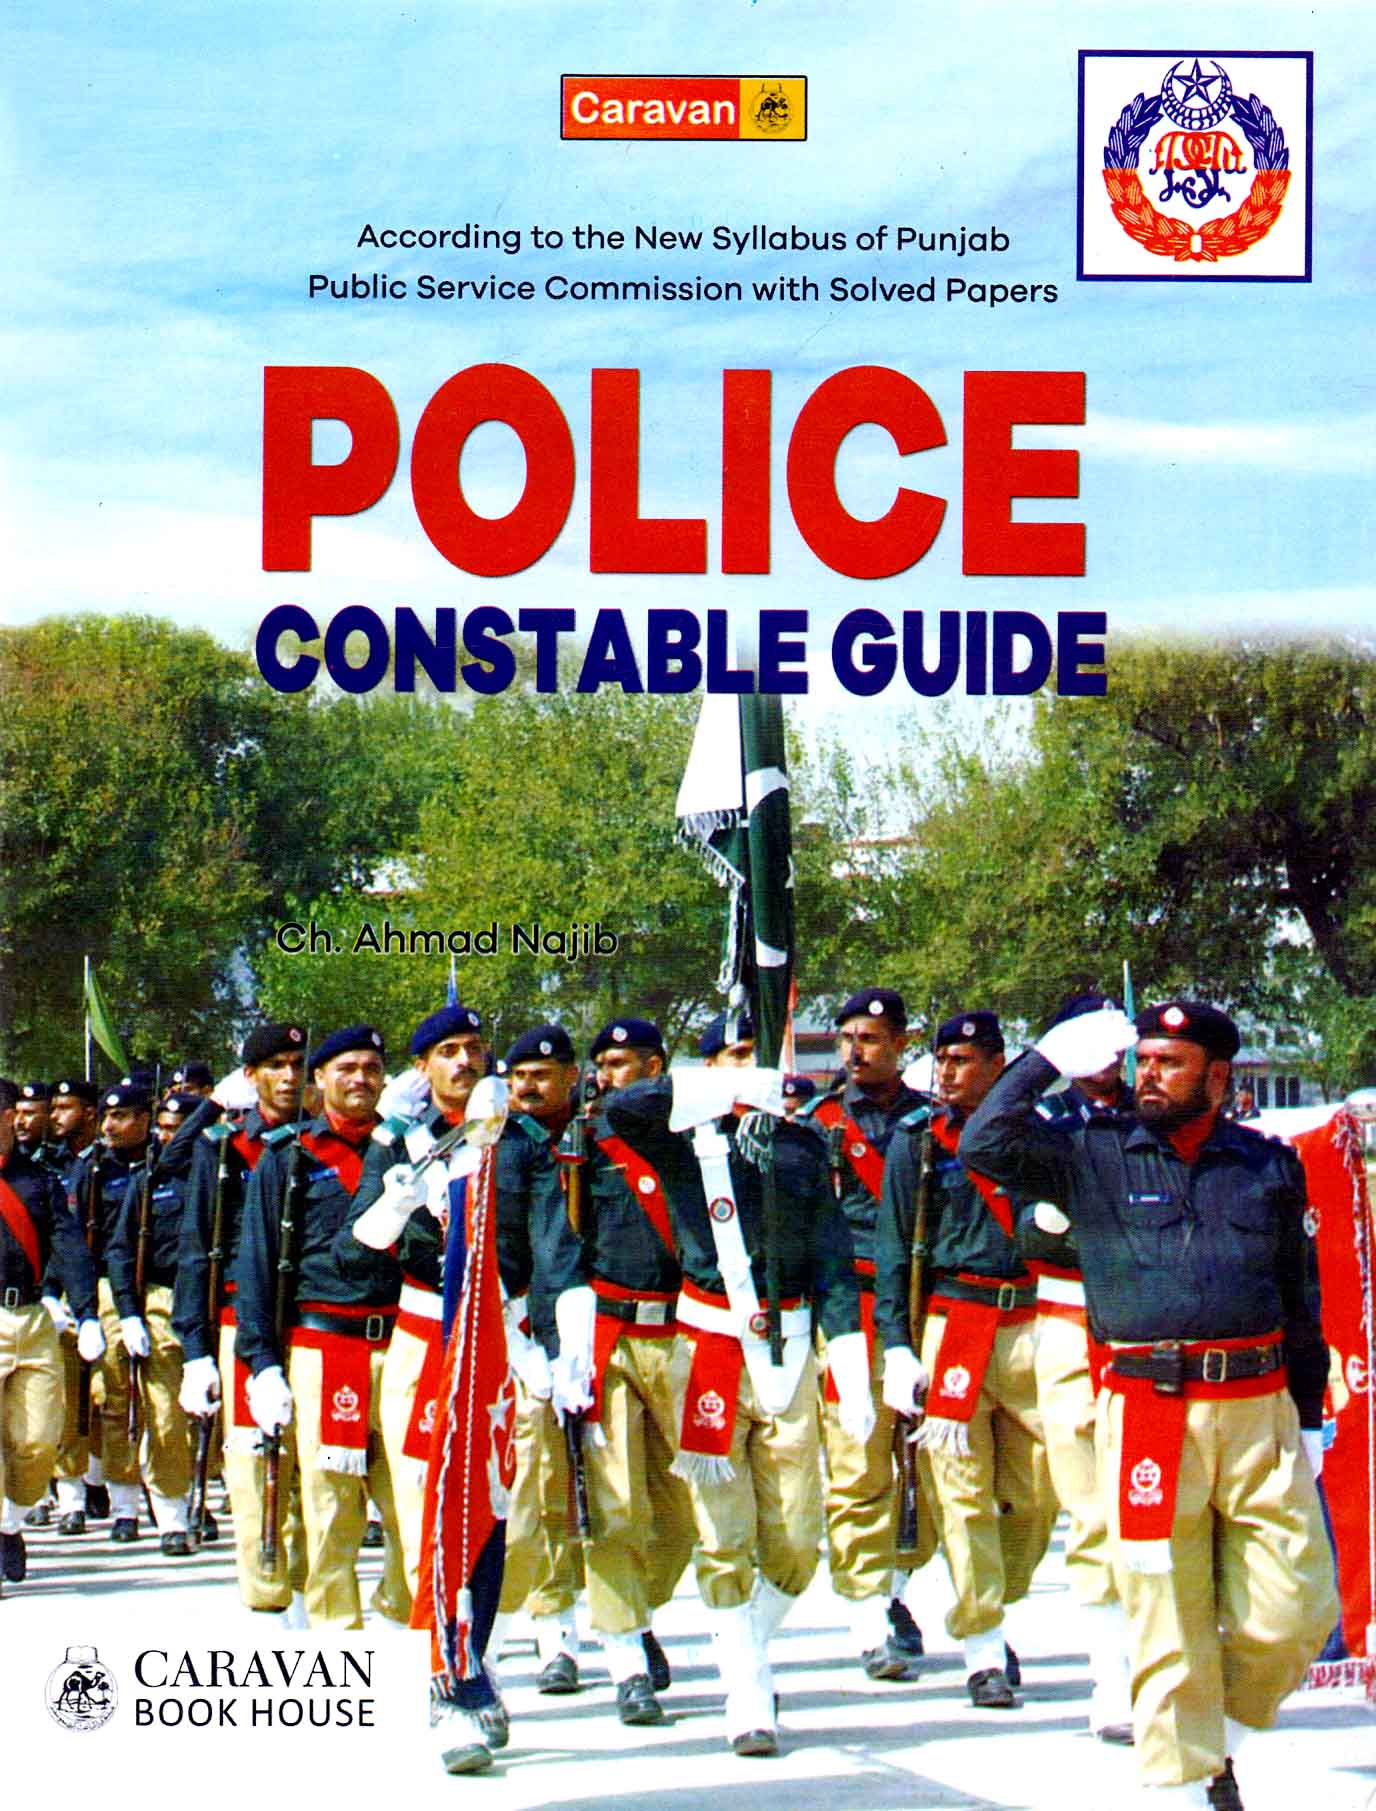 caravan-police-constable-guide-book-by-ch-ahmad-najib-pak-army-ranks